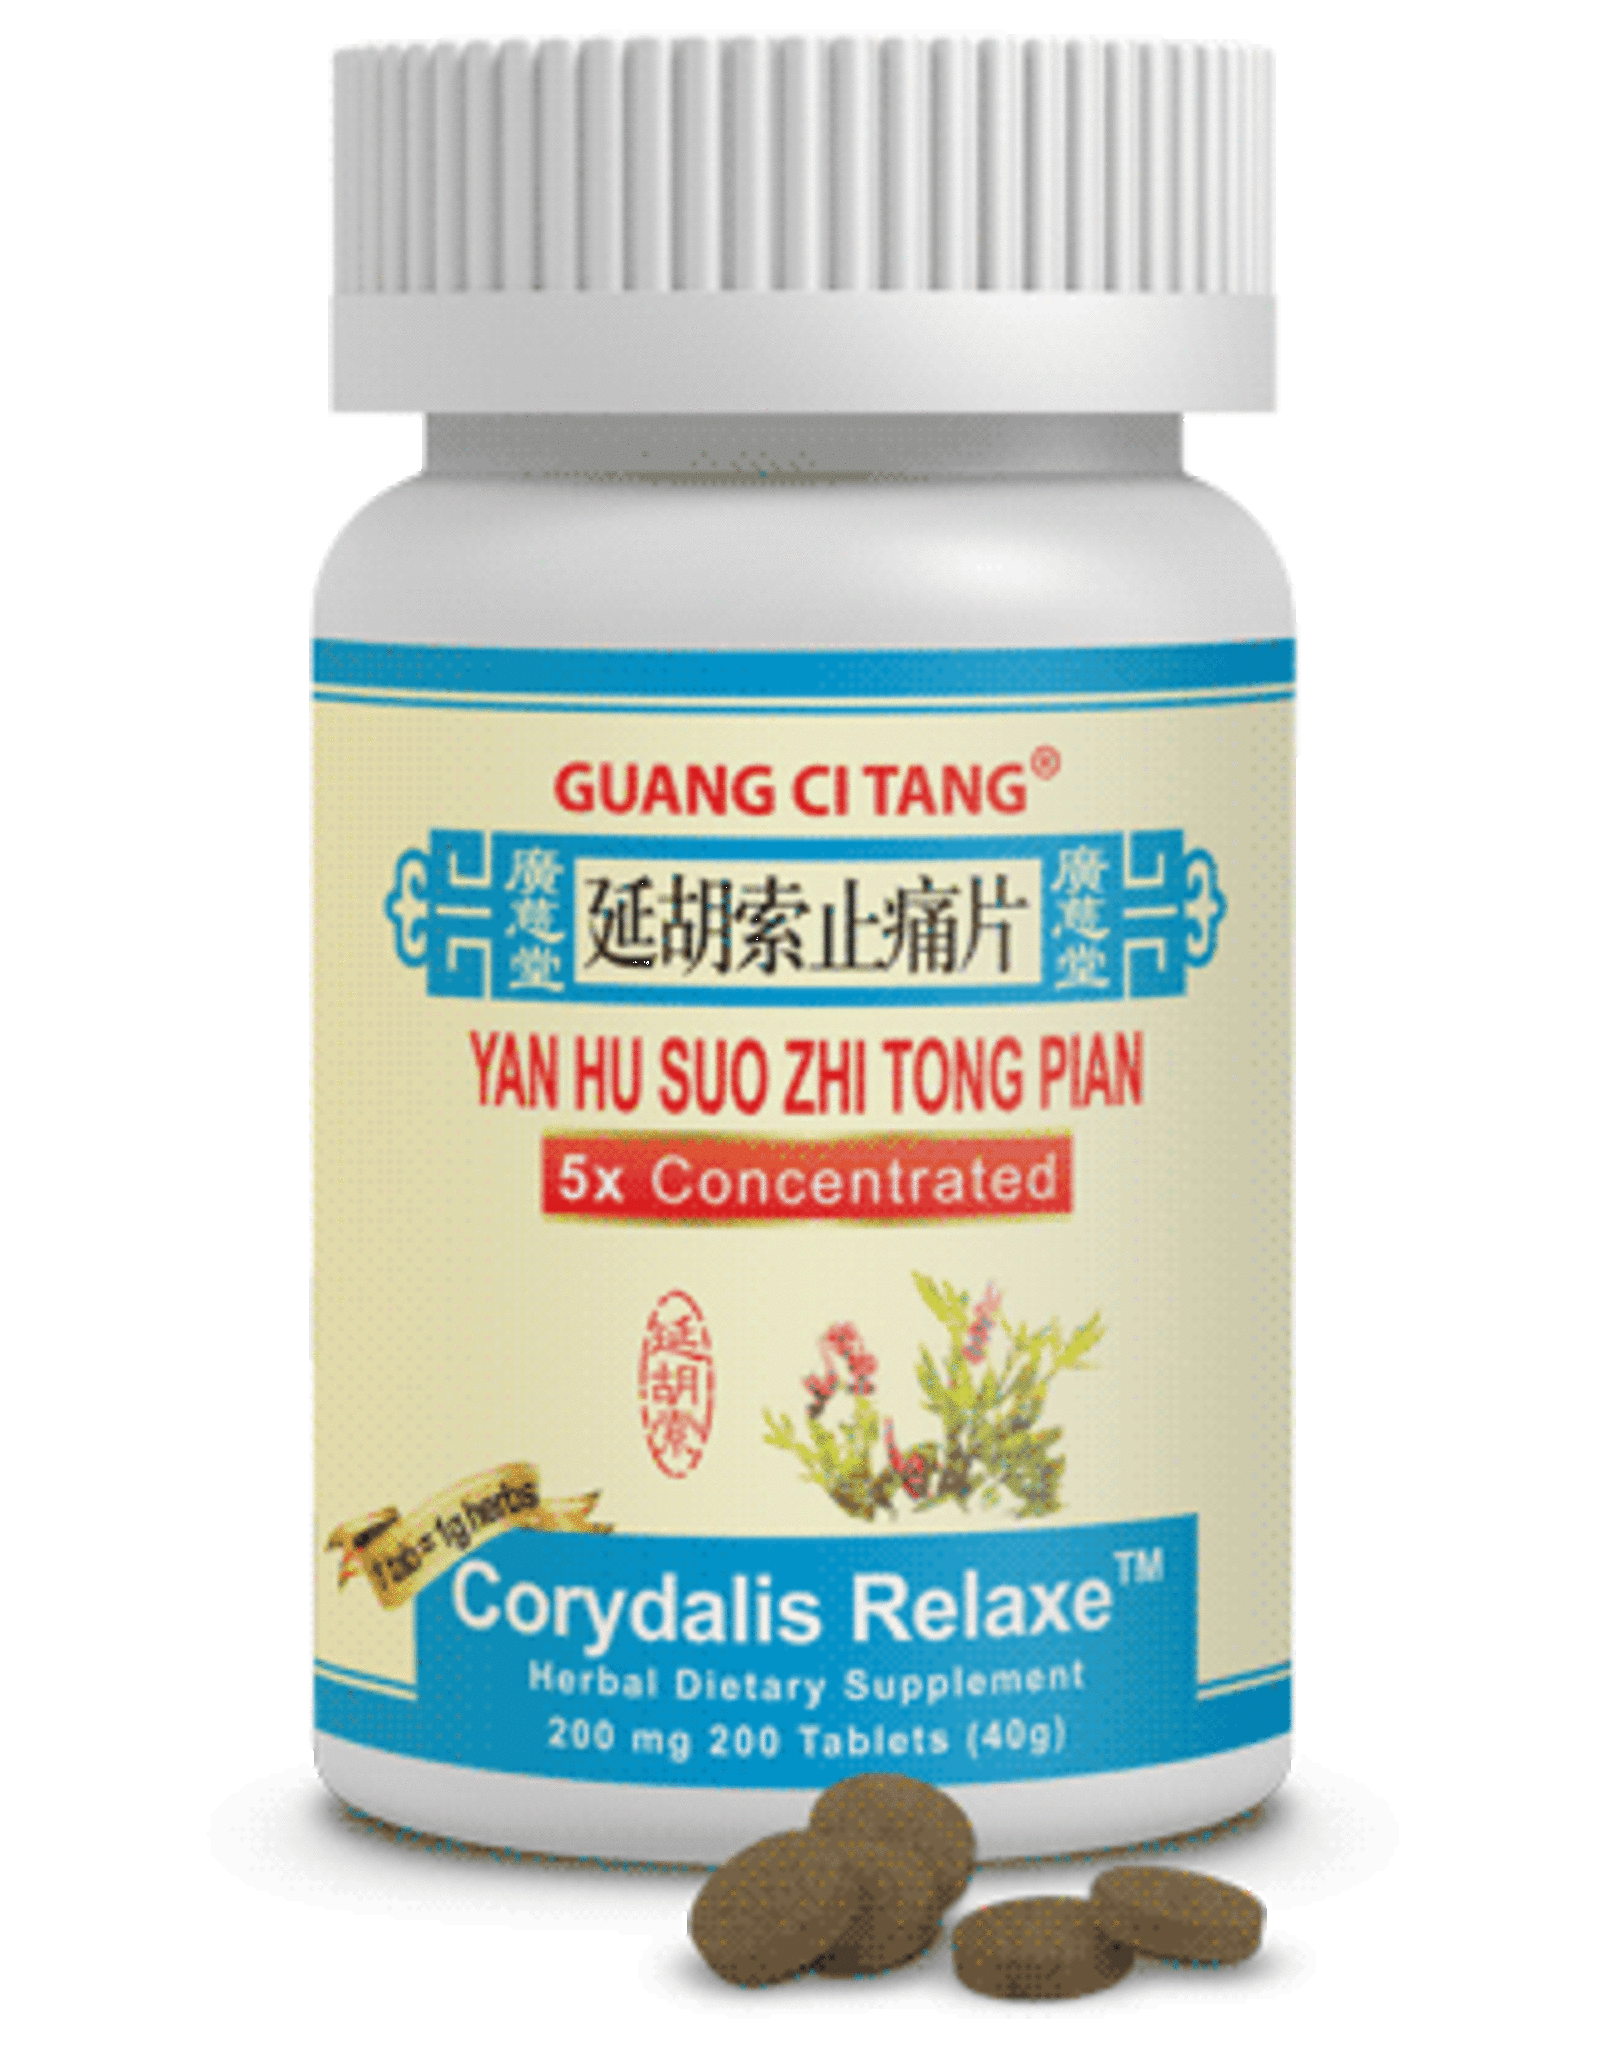 Guang Ci Tang Corydalis Relaxe ( yan hu suo zhi tong pian)